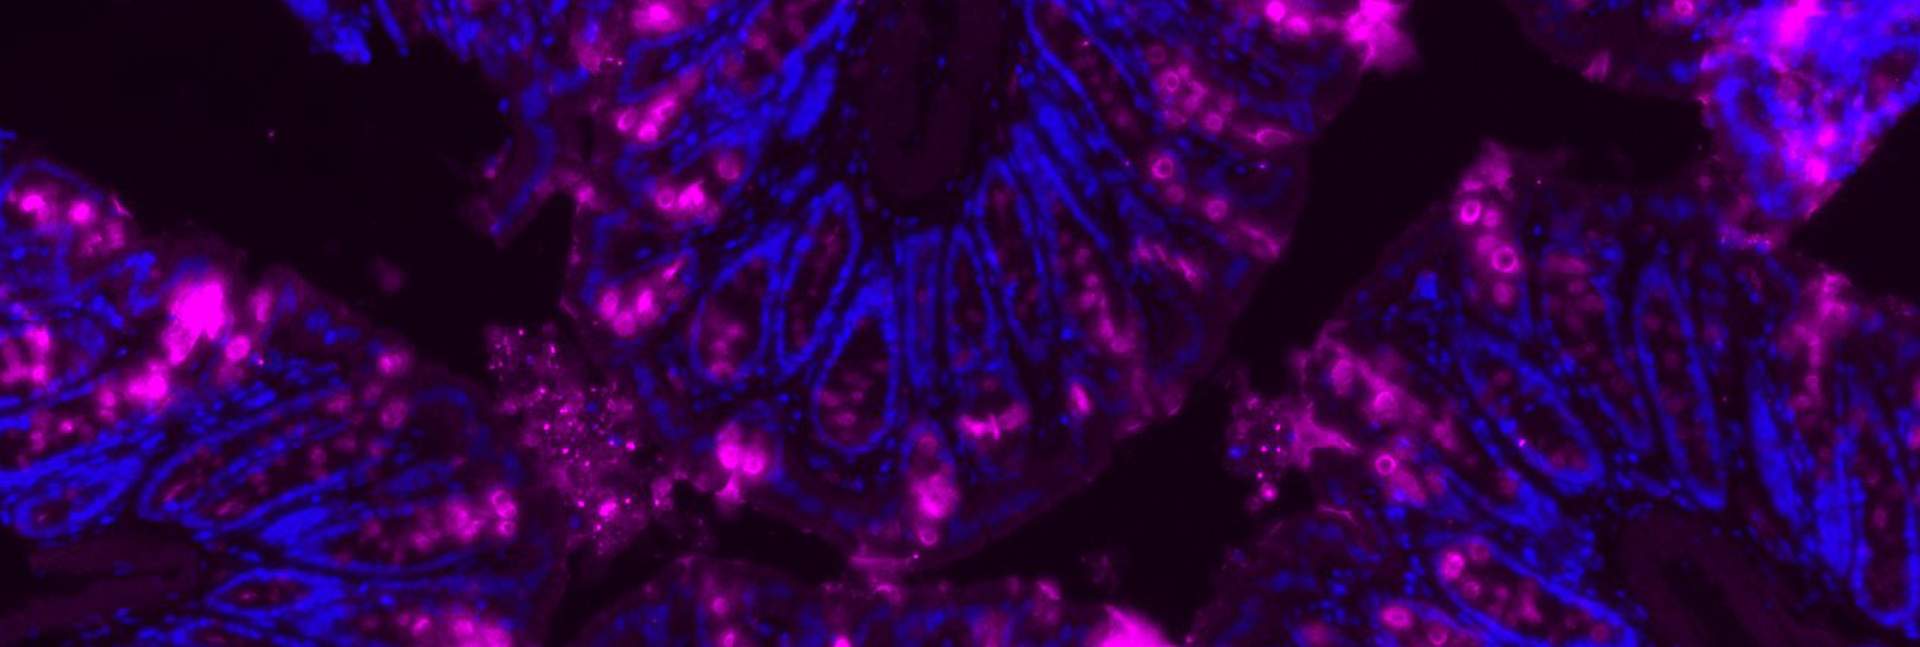 החלבון מוצין (בסגול) מצפה מעי עכבר, בהגדלת מיקרוסקופ